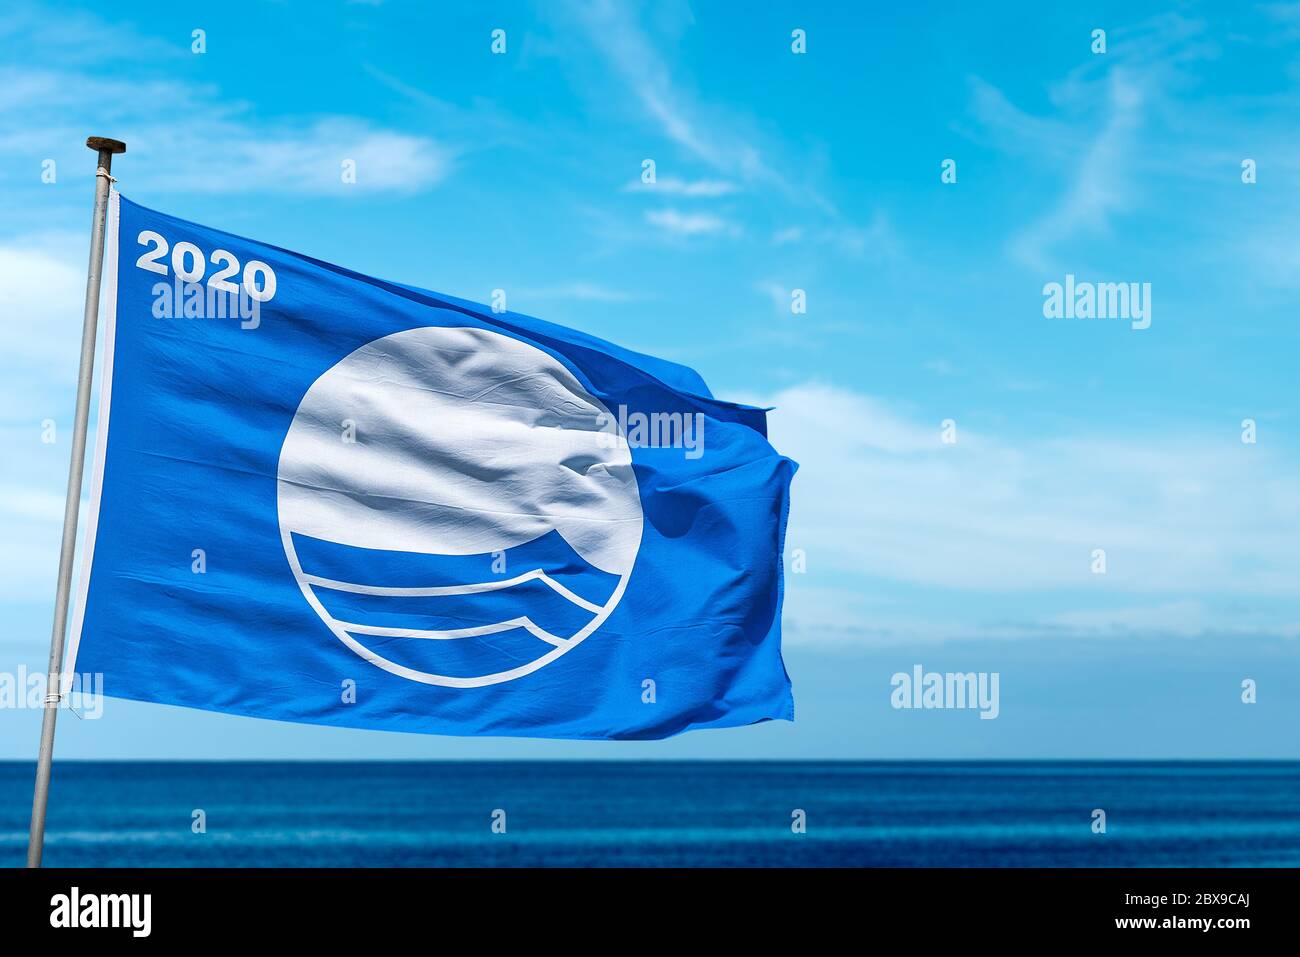 Spiaggia Bandiera Blu 2020, simbolo di alta qualità delle località costiere con spiagge pulite e mare. TASSA (Fondazione per l'Educazione ambientale) Foto Stock